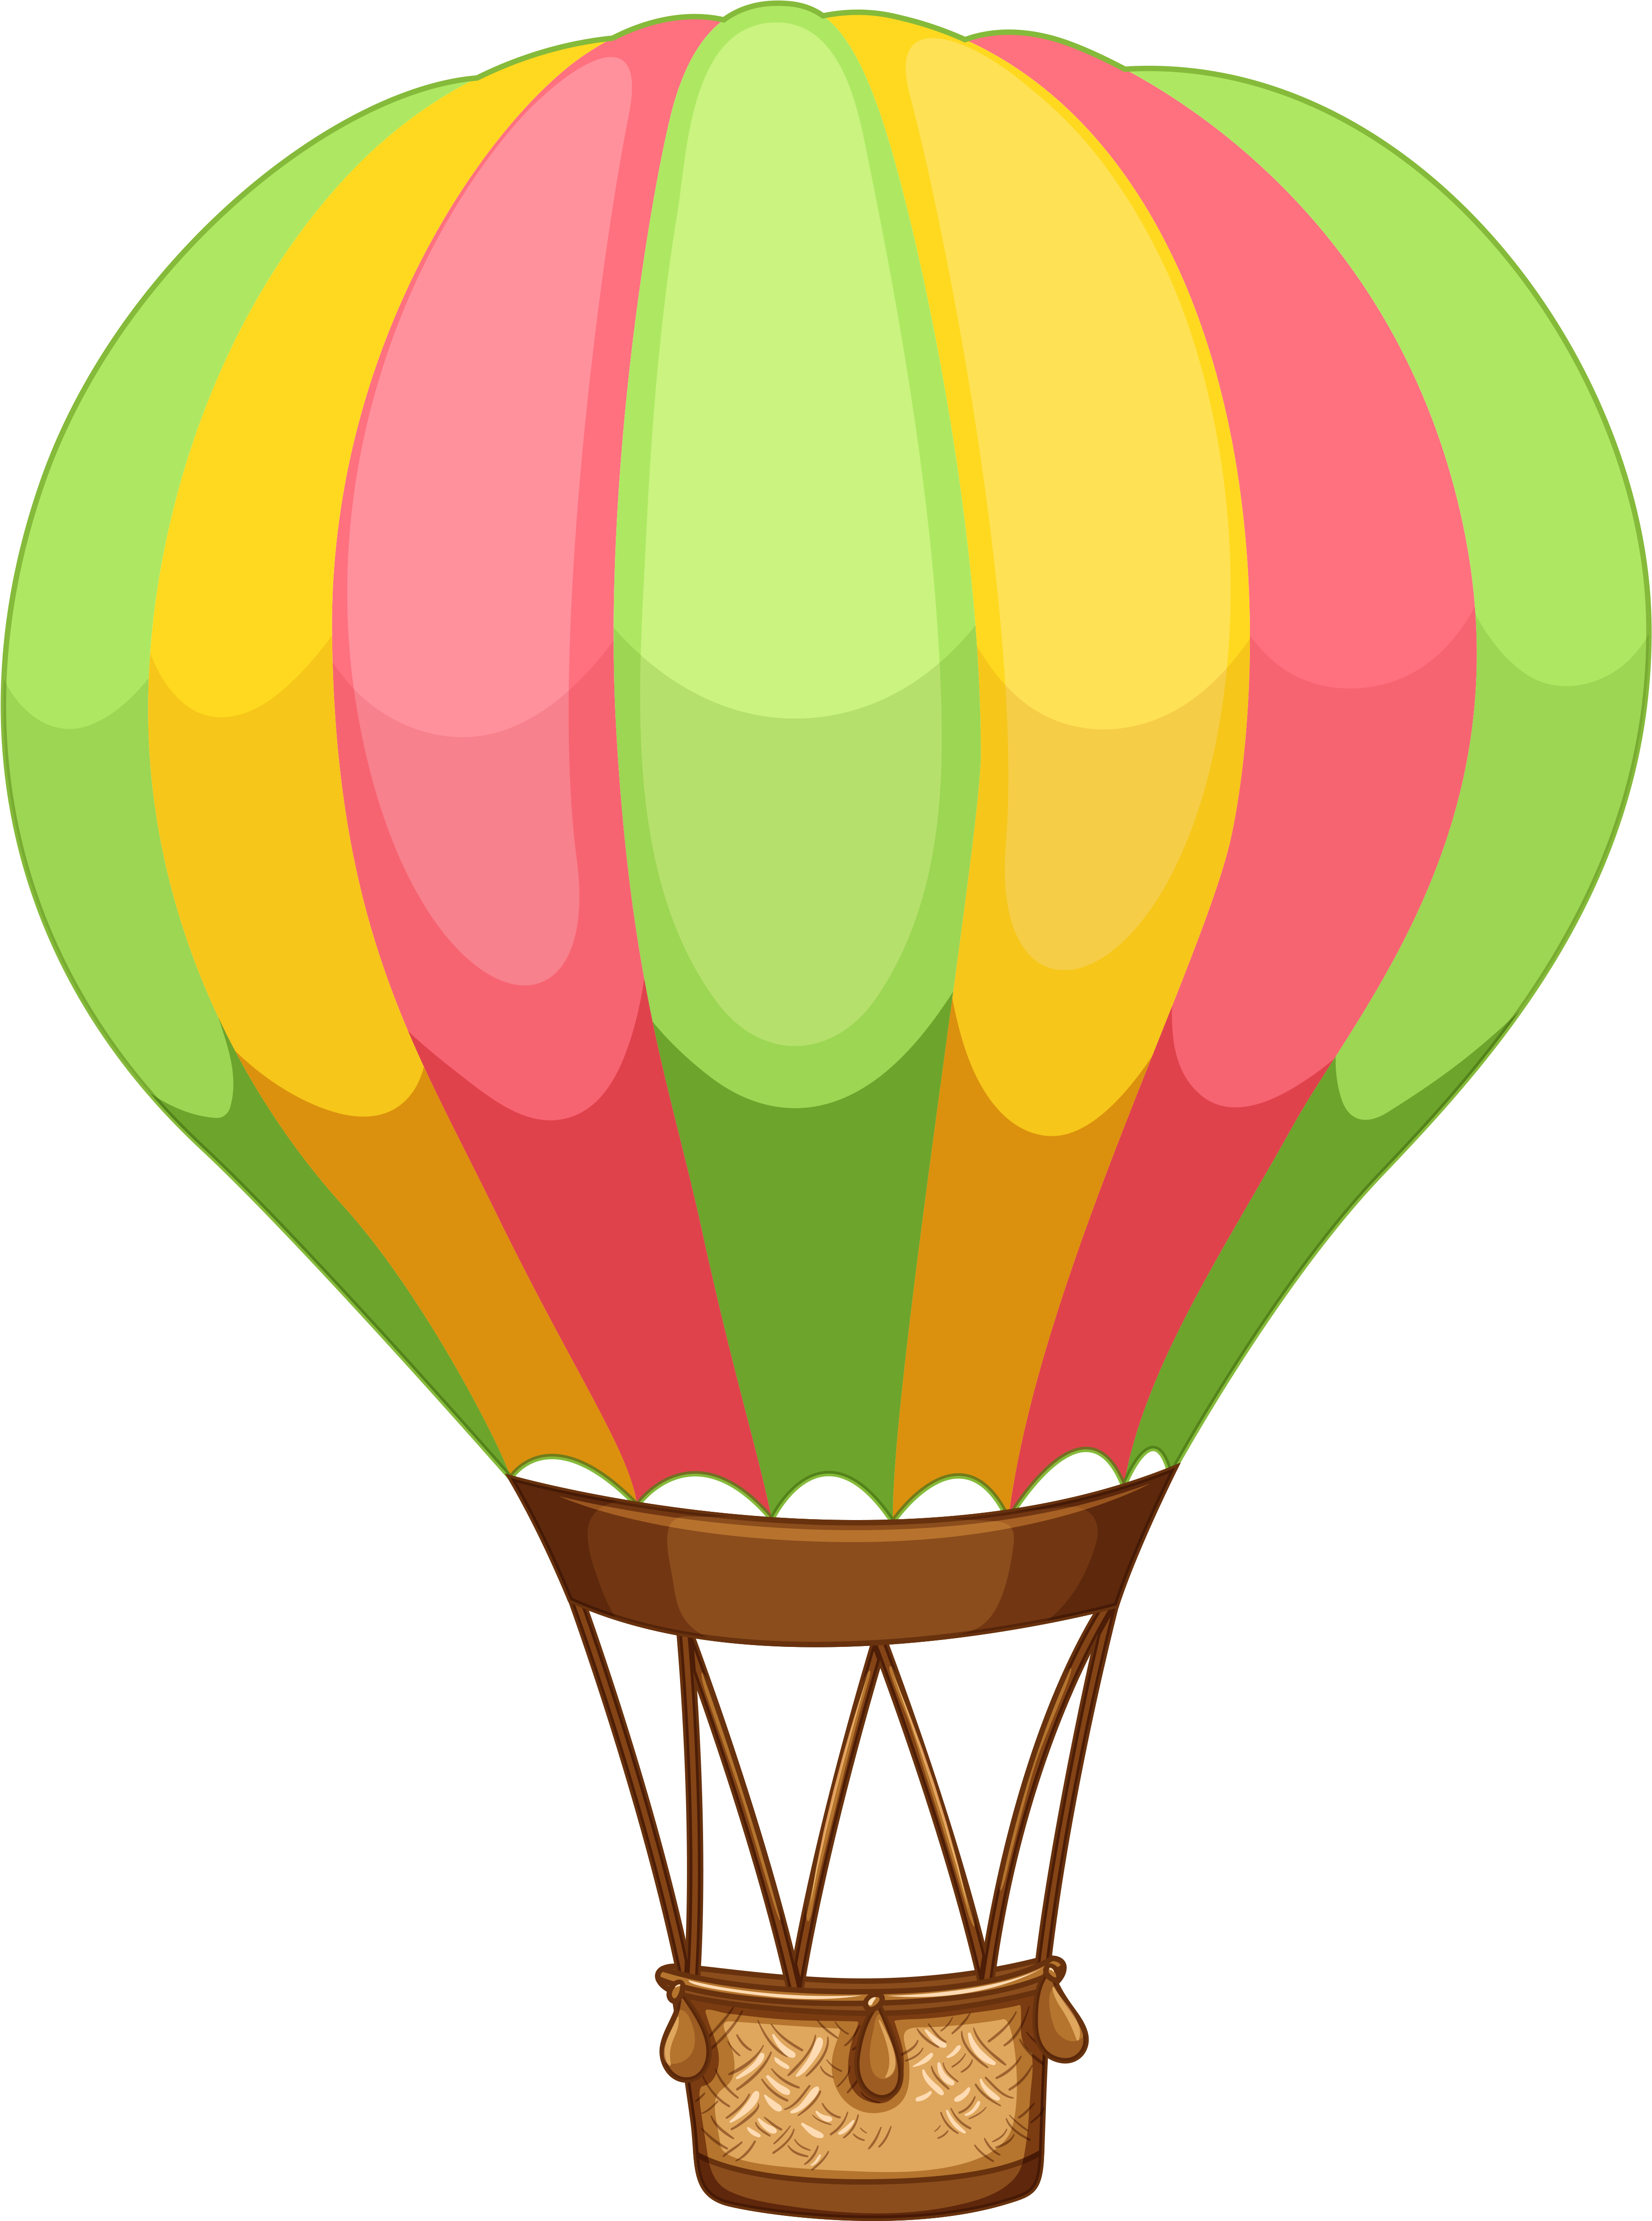 Balon - Hot Air Balloon Cartoon (3835x5000)